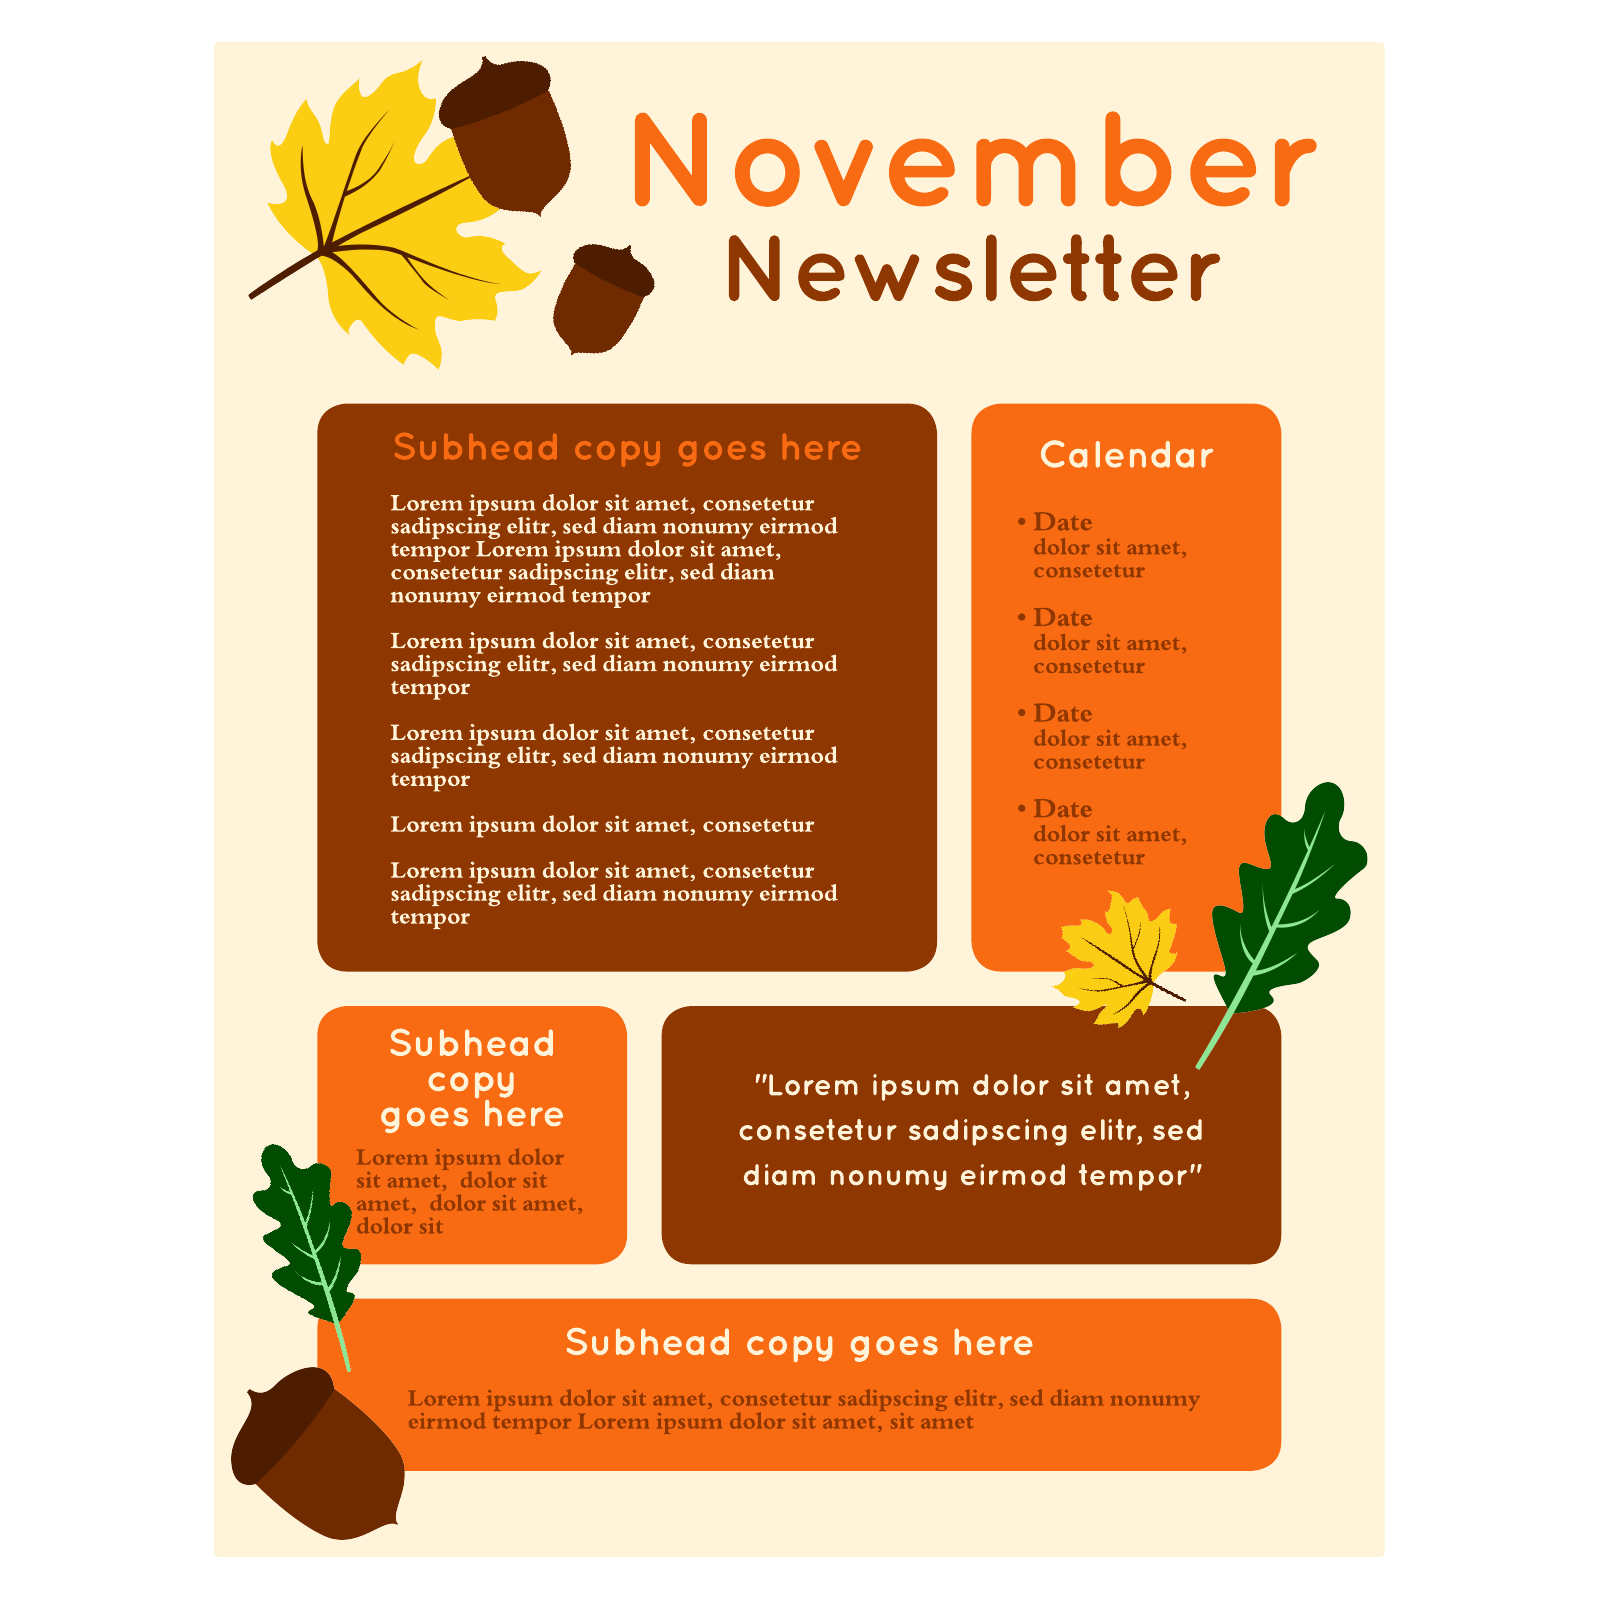 November newsletter example